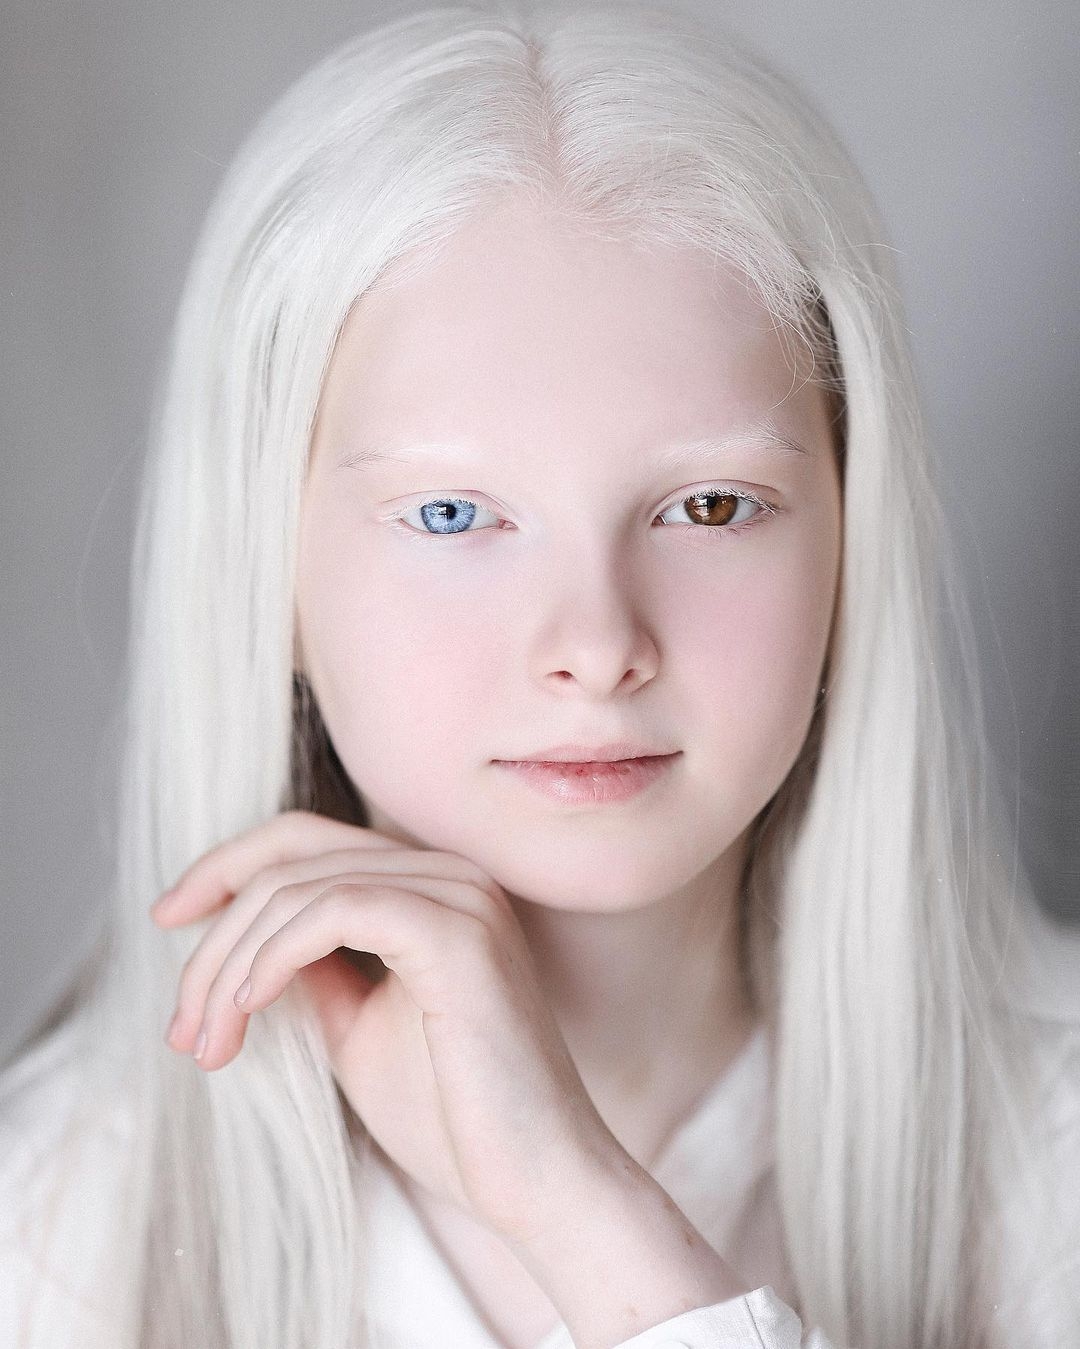 阿尔比诺 白化症综合征的可爱小女孩 库存照片. 图片 包括有 敬慕, 逗人喜爱, 人力, 头发, 正餐 - 184861214